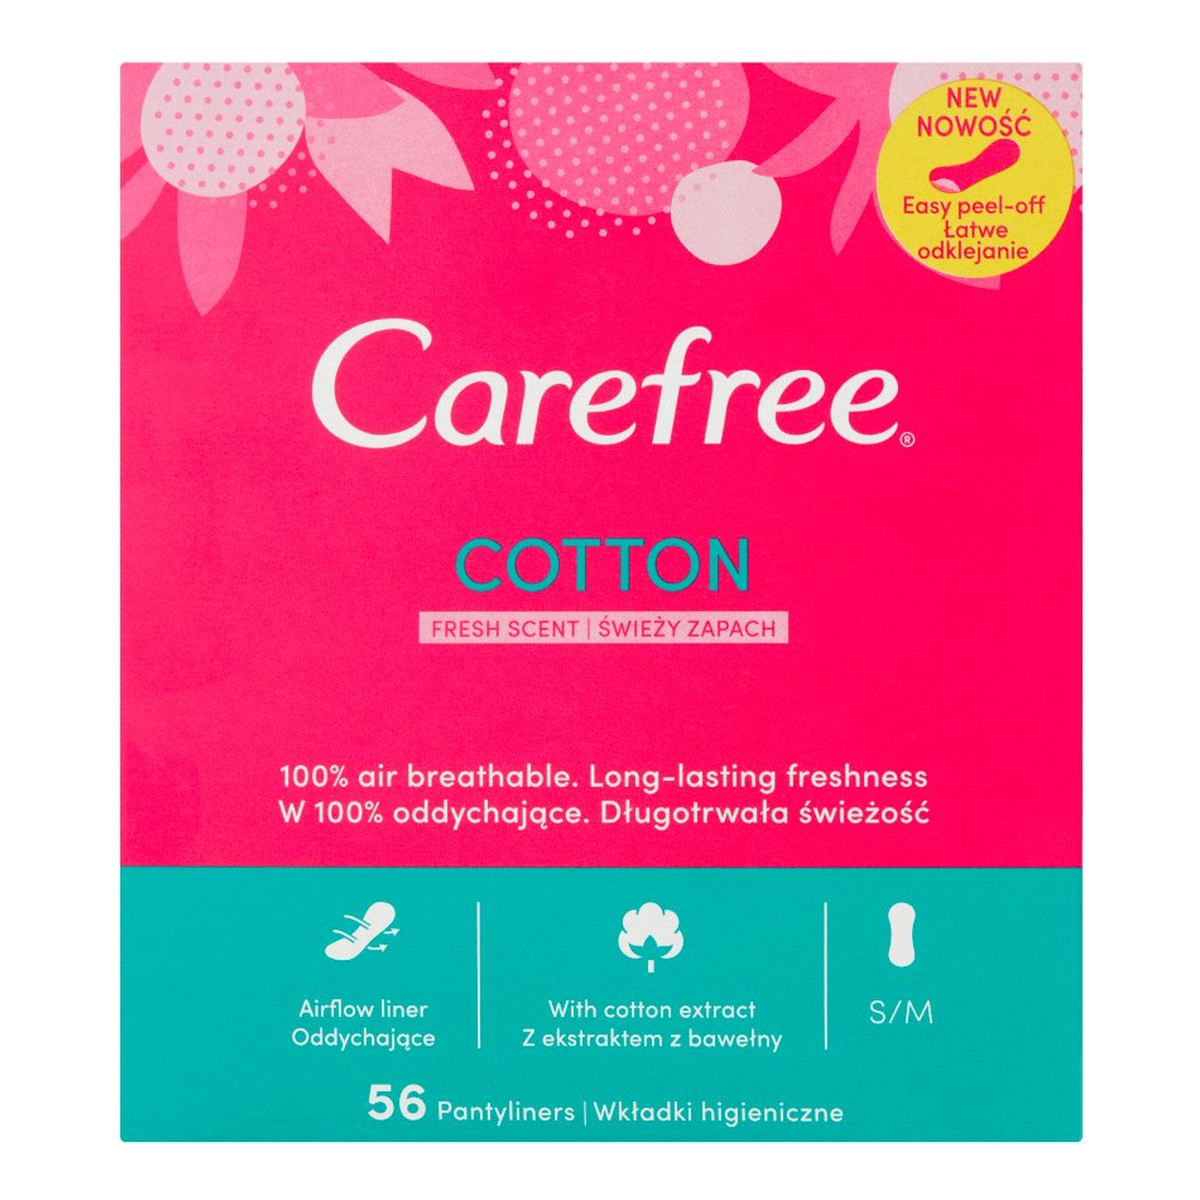 Carefree Cotton Fresh Wkładki higieniczne świeży zapach 56 sztuk